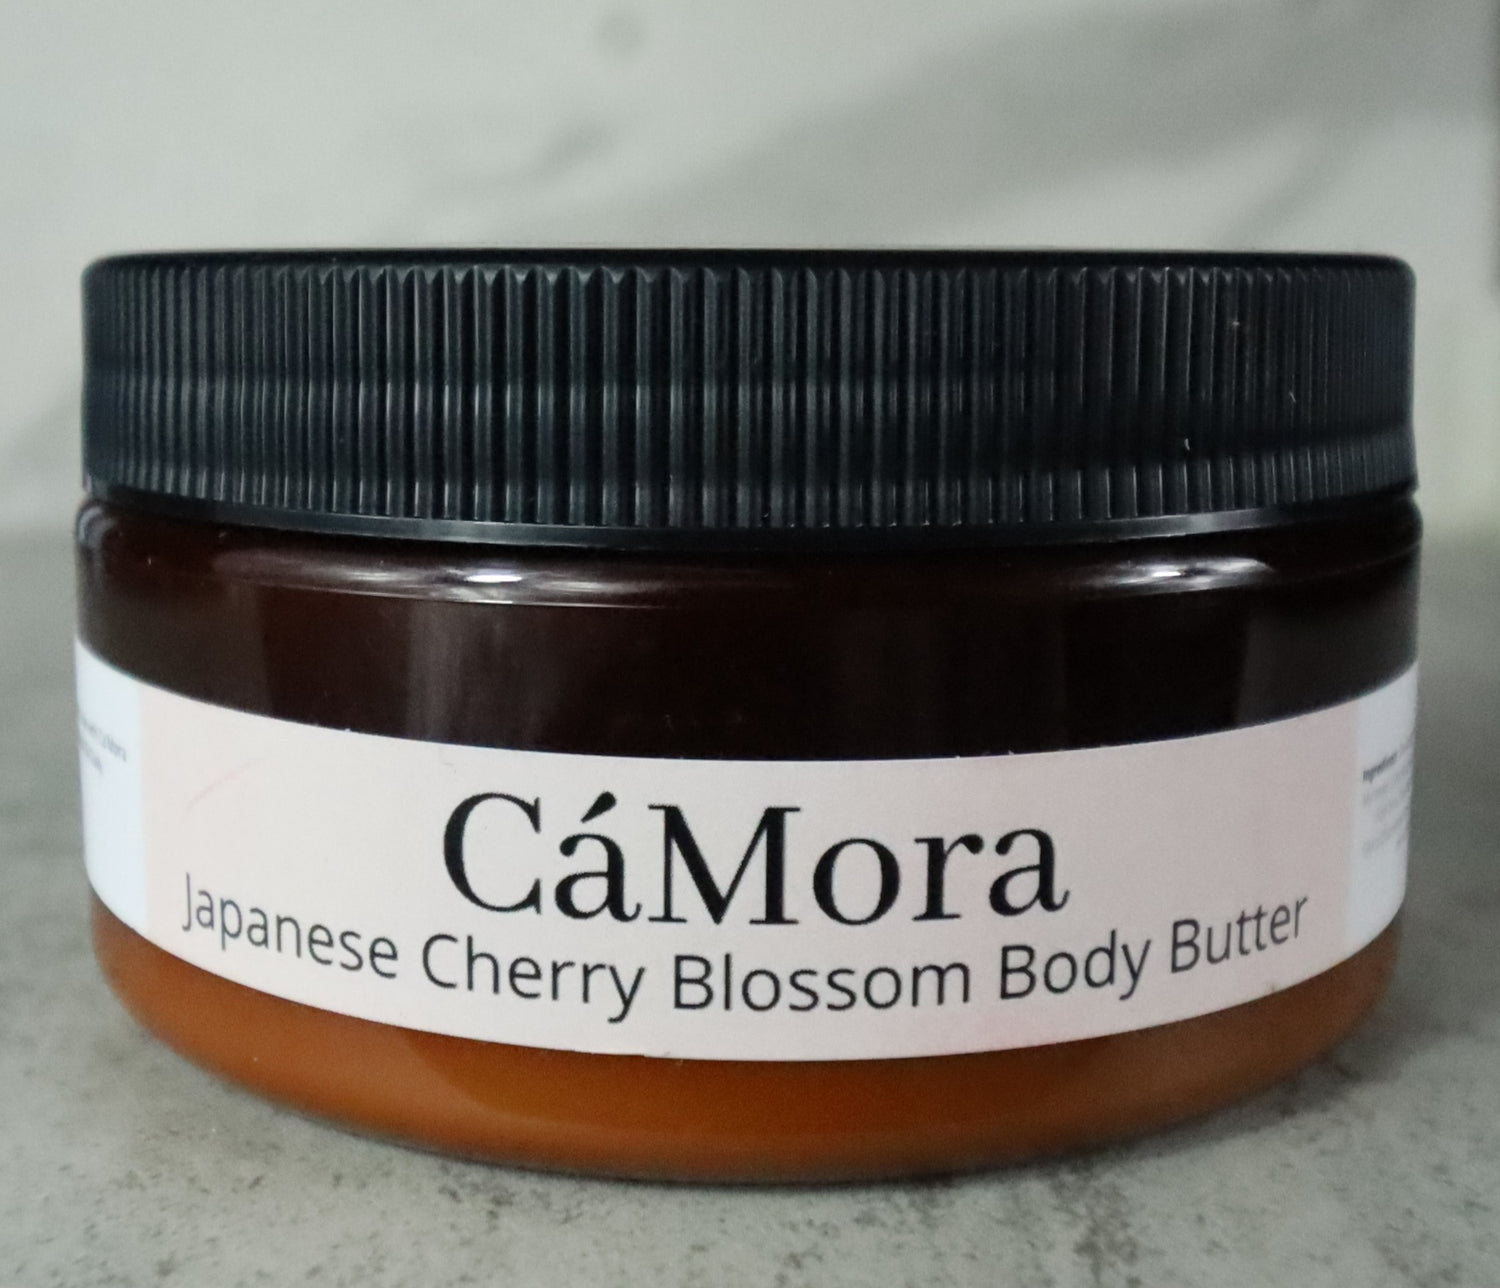 Ca'Mora Japanese cherry blossom body butter for moisturized skin.